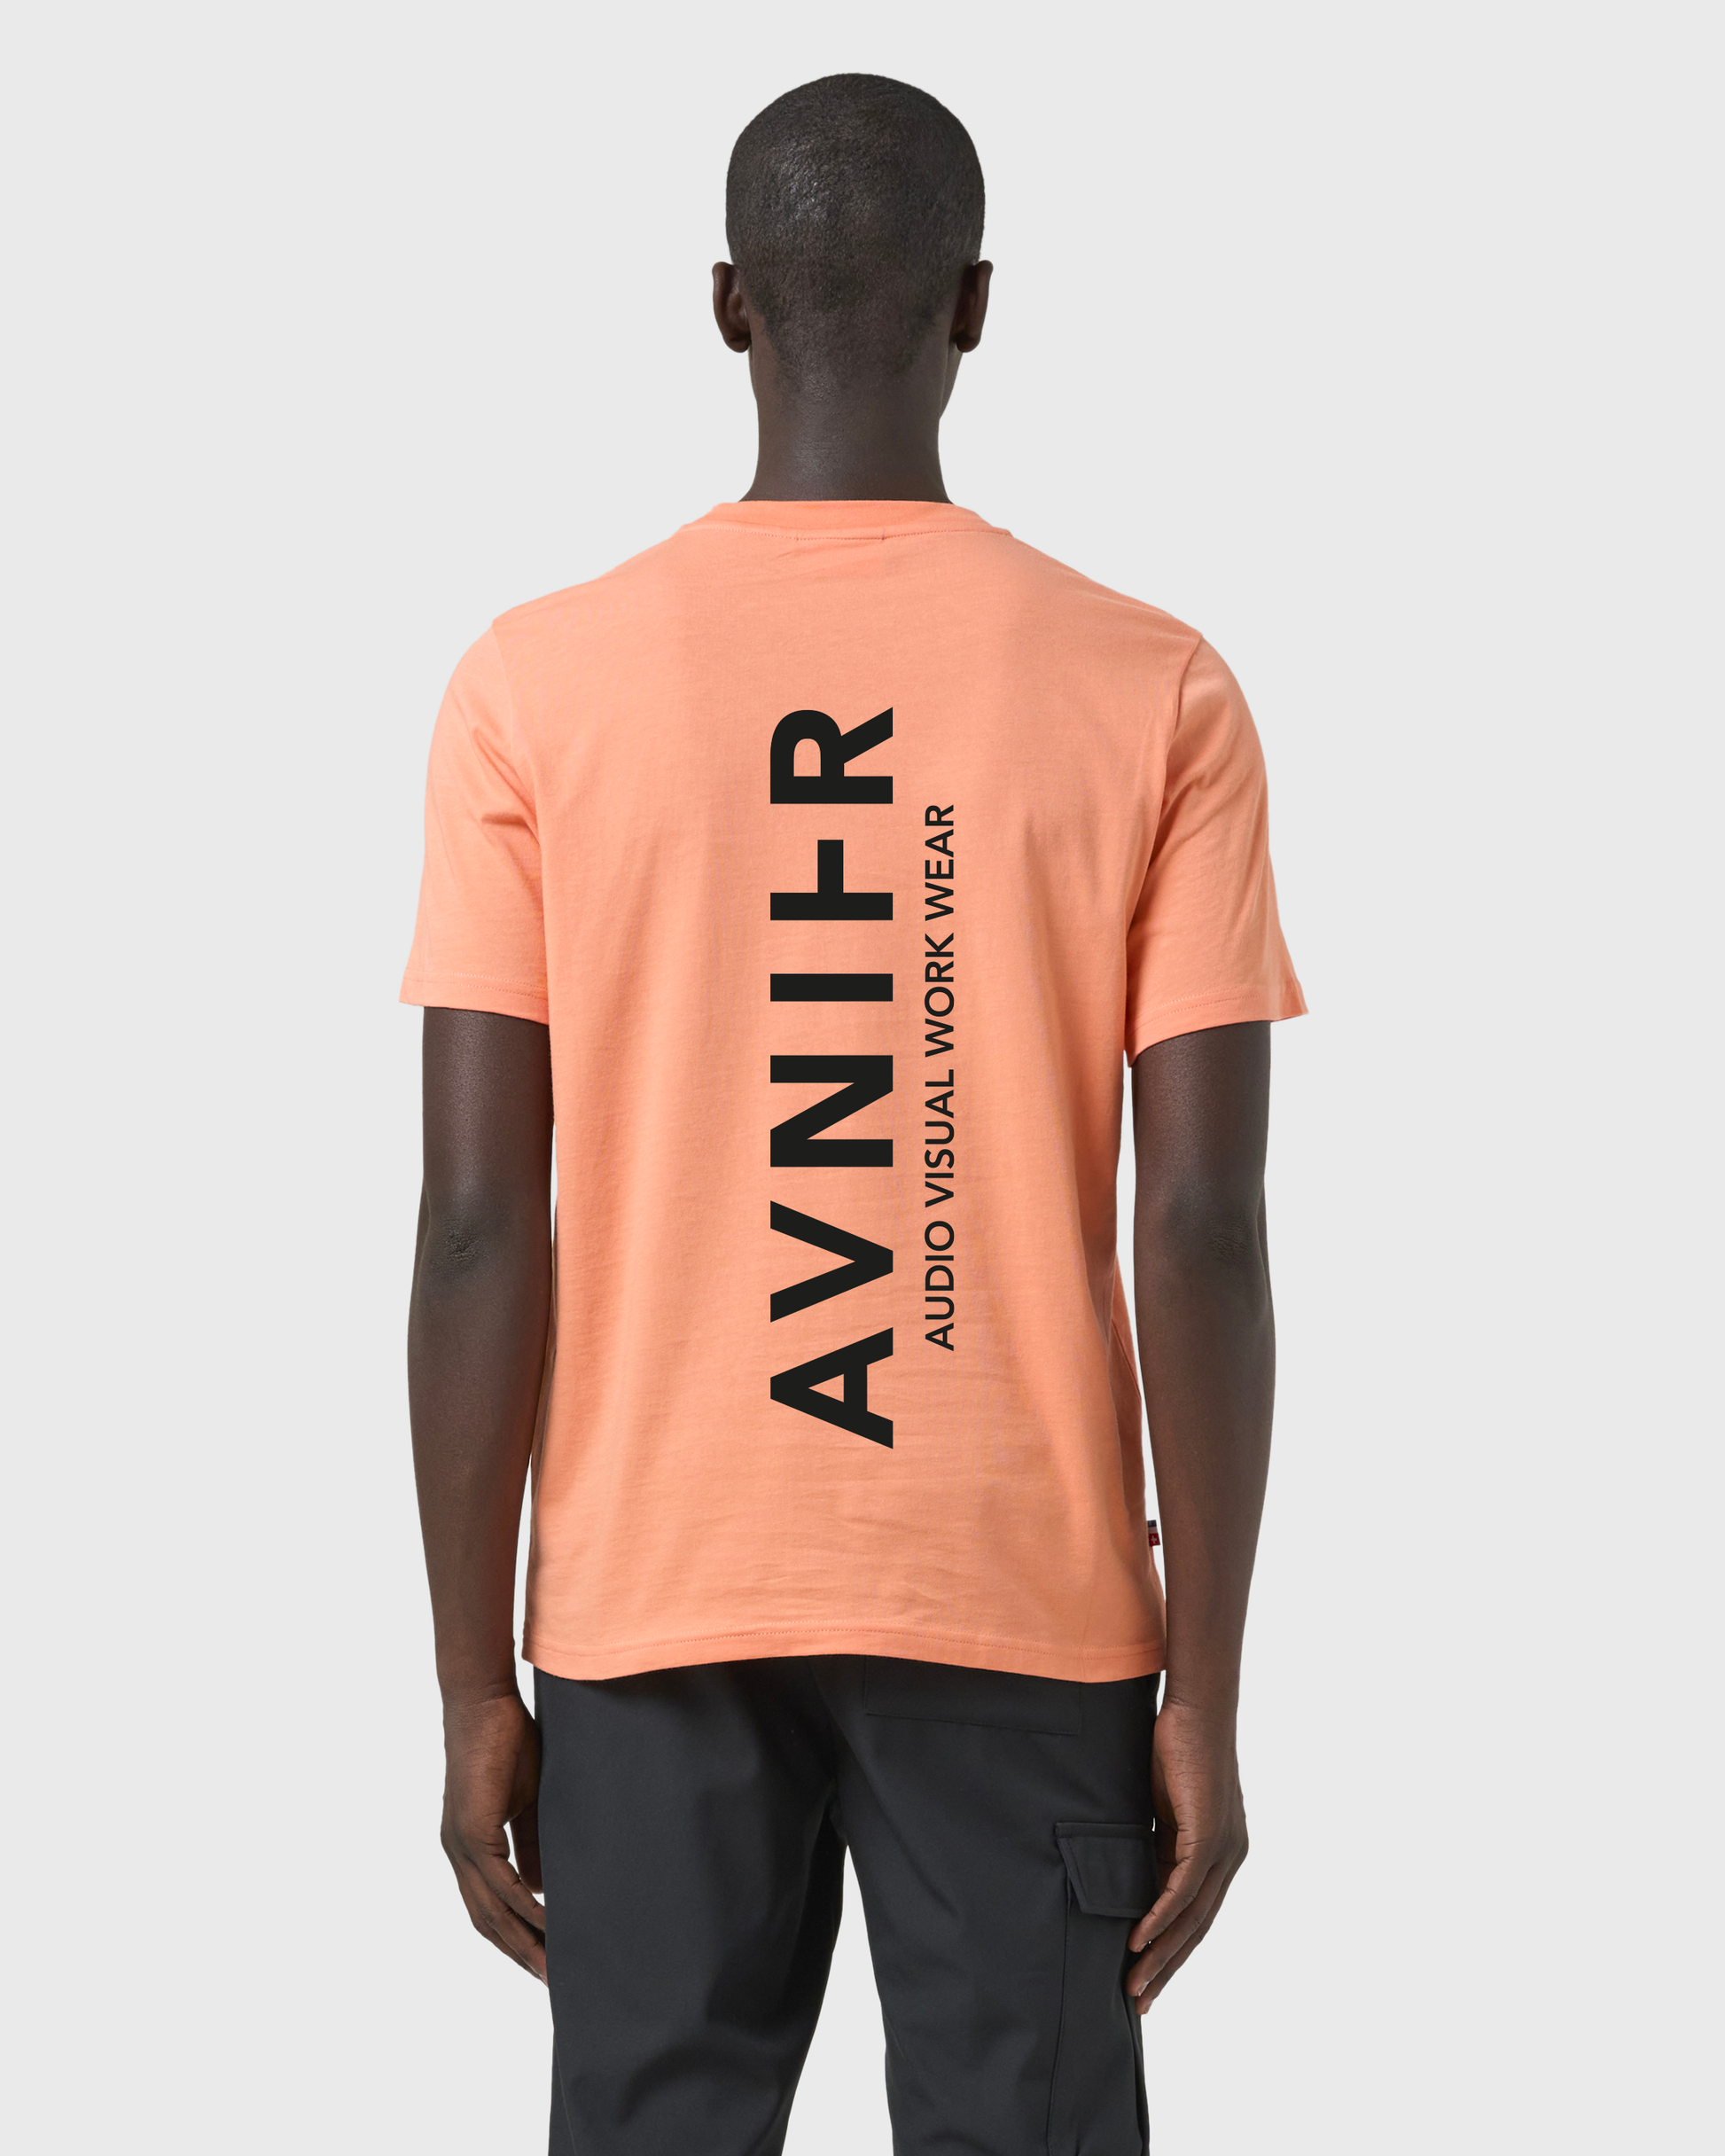 t-shirt-source-vertical-orange-avnier-avnir-3-silhouette-dos - Orange vibrant